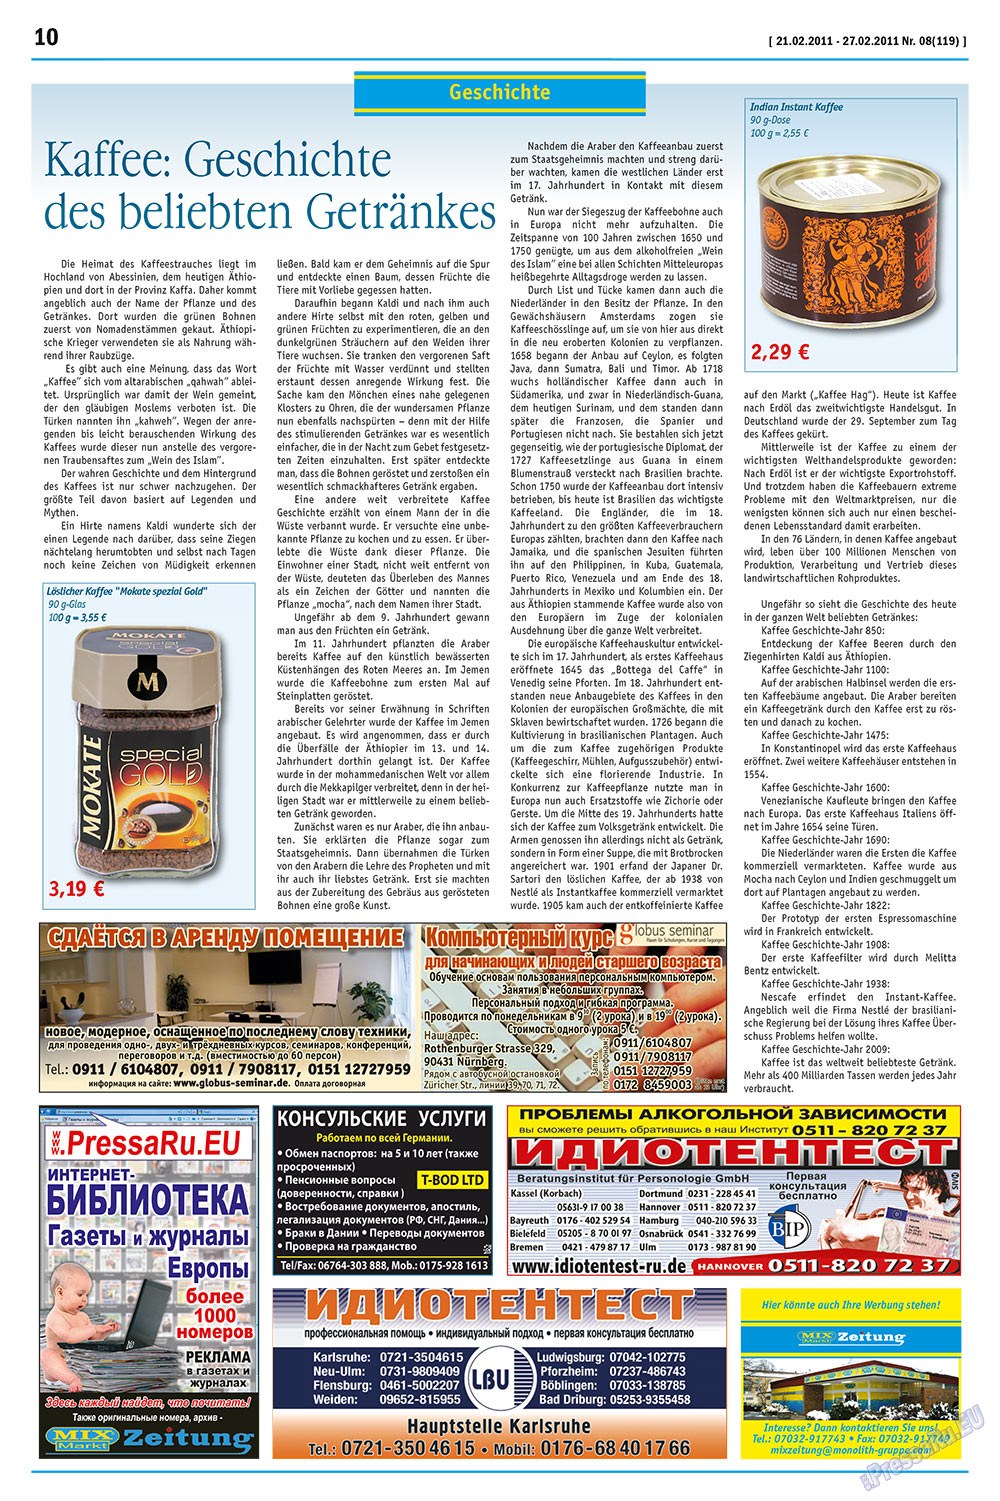 MIX-Markt Zeitung (газета). 2011 год, номер 8, стр. 10